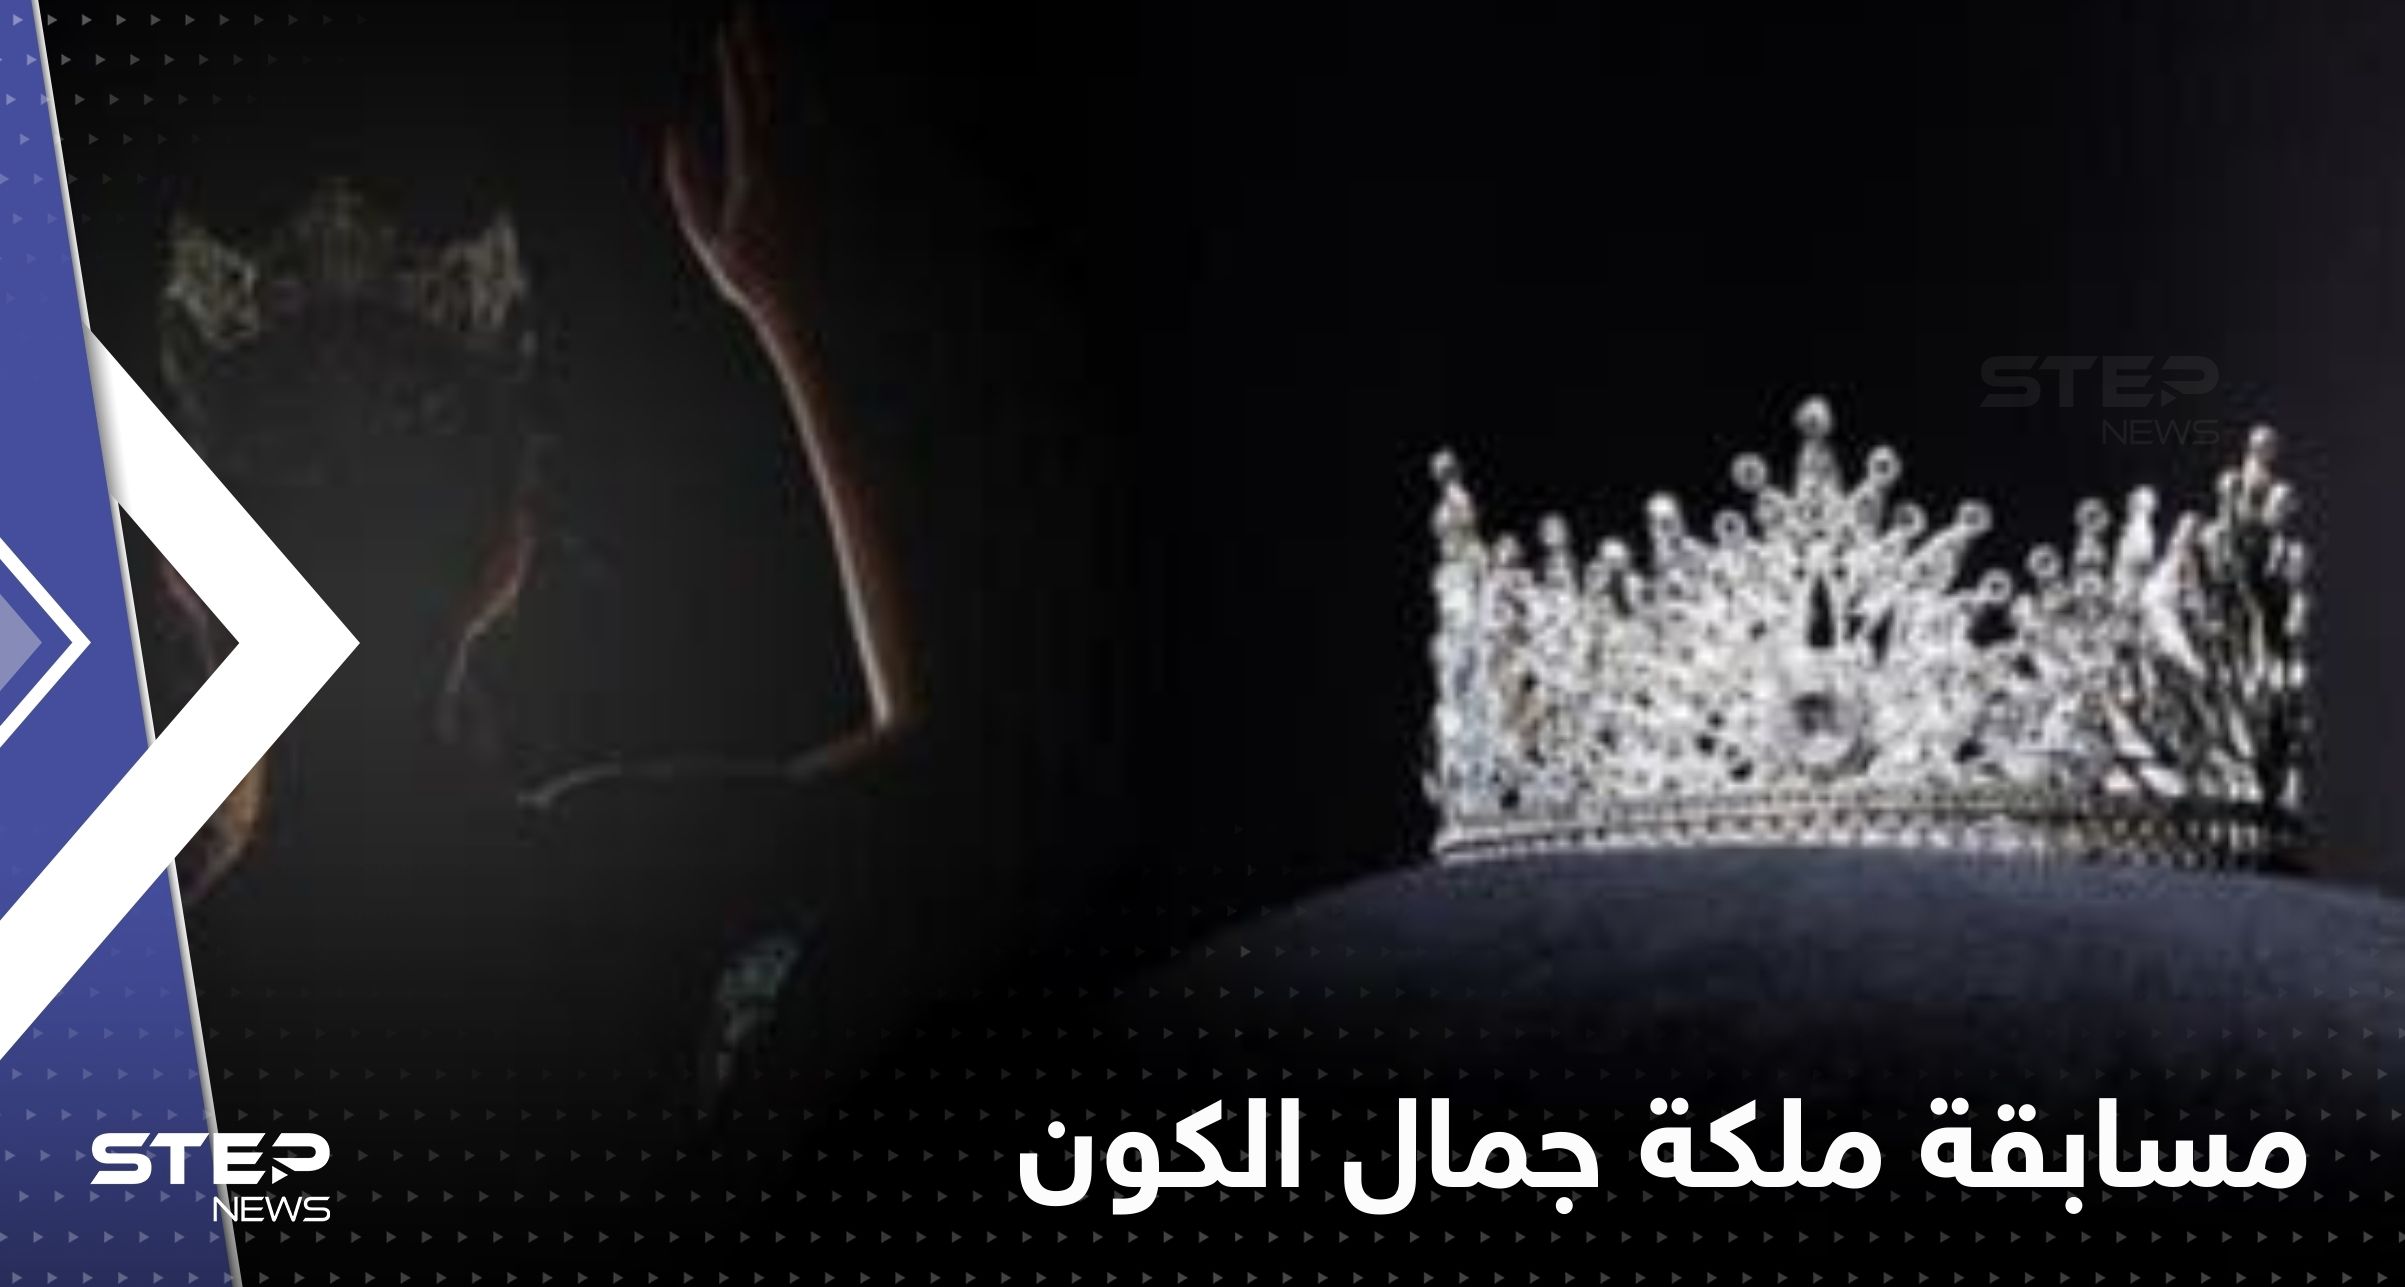 فتاتان ممثلتان للعرب بمسابقة ملكة جمال الكون.. فمن هما؟ (صور)